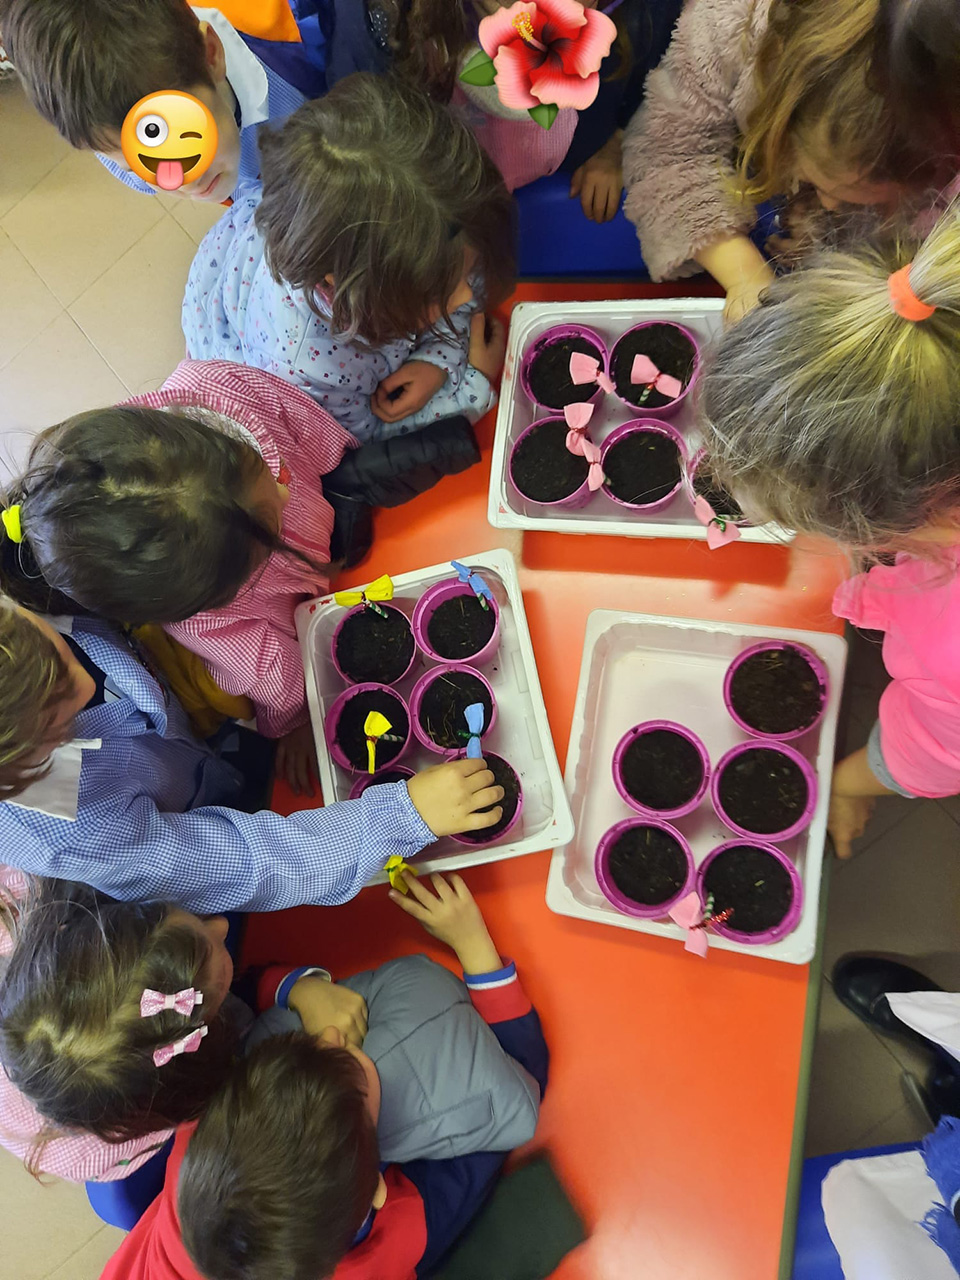 Bambini decorano i loro vasetti pieni di terra